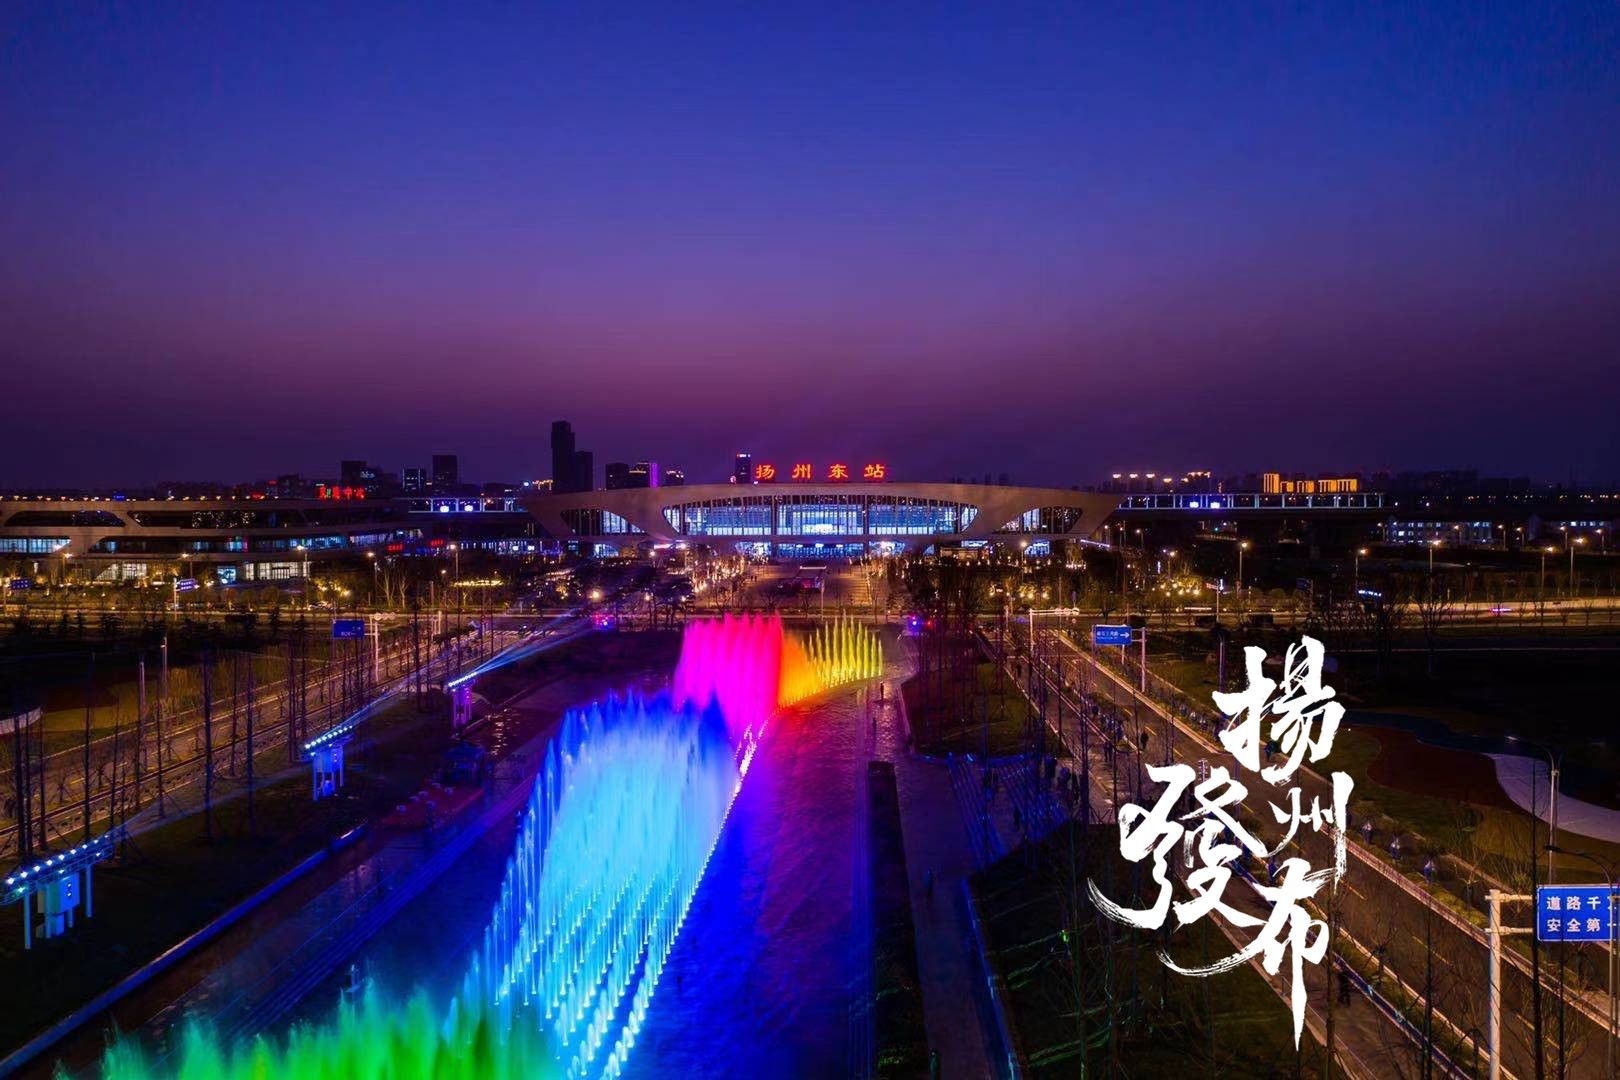 扬州东站光影水秀表演时间表来了!